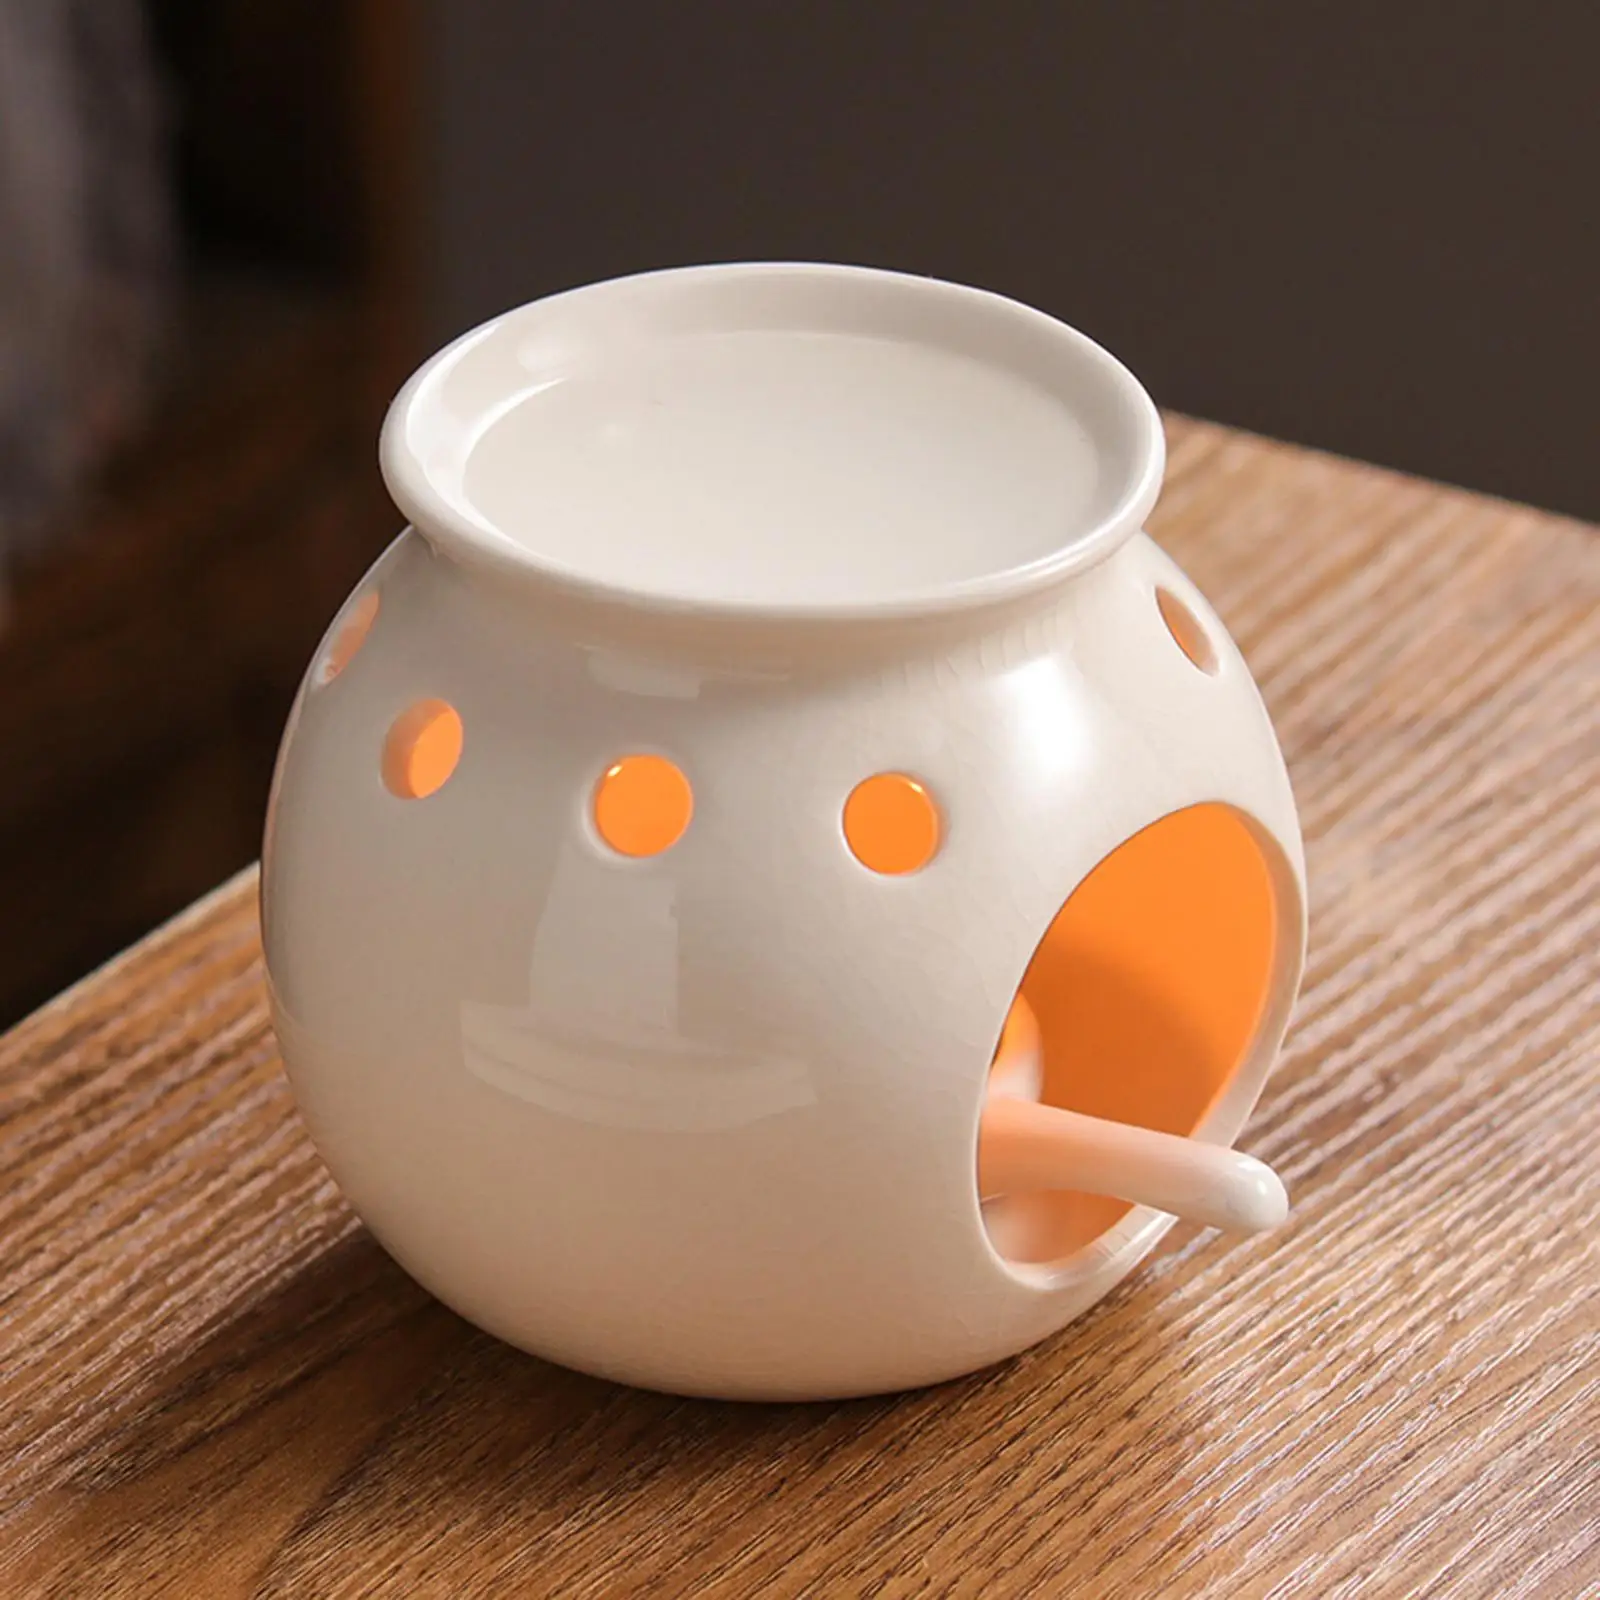 Tealight Holder Melter Wax Oil Tea Light Decor Censer Ceramic Oil Burner for Home Bedroom Yoga SPA Housewarming Gift